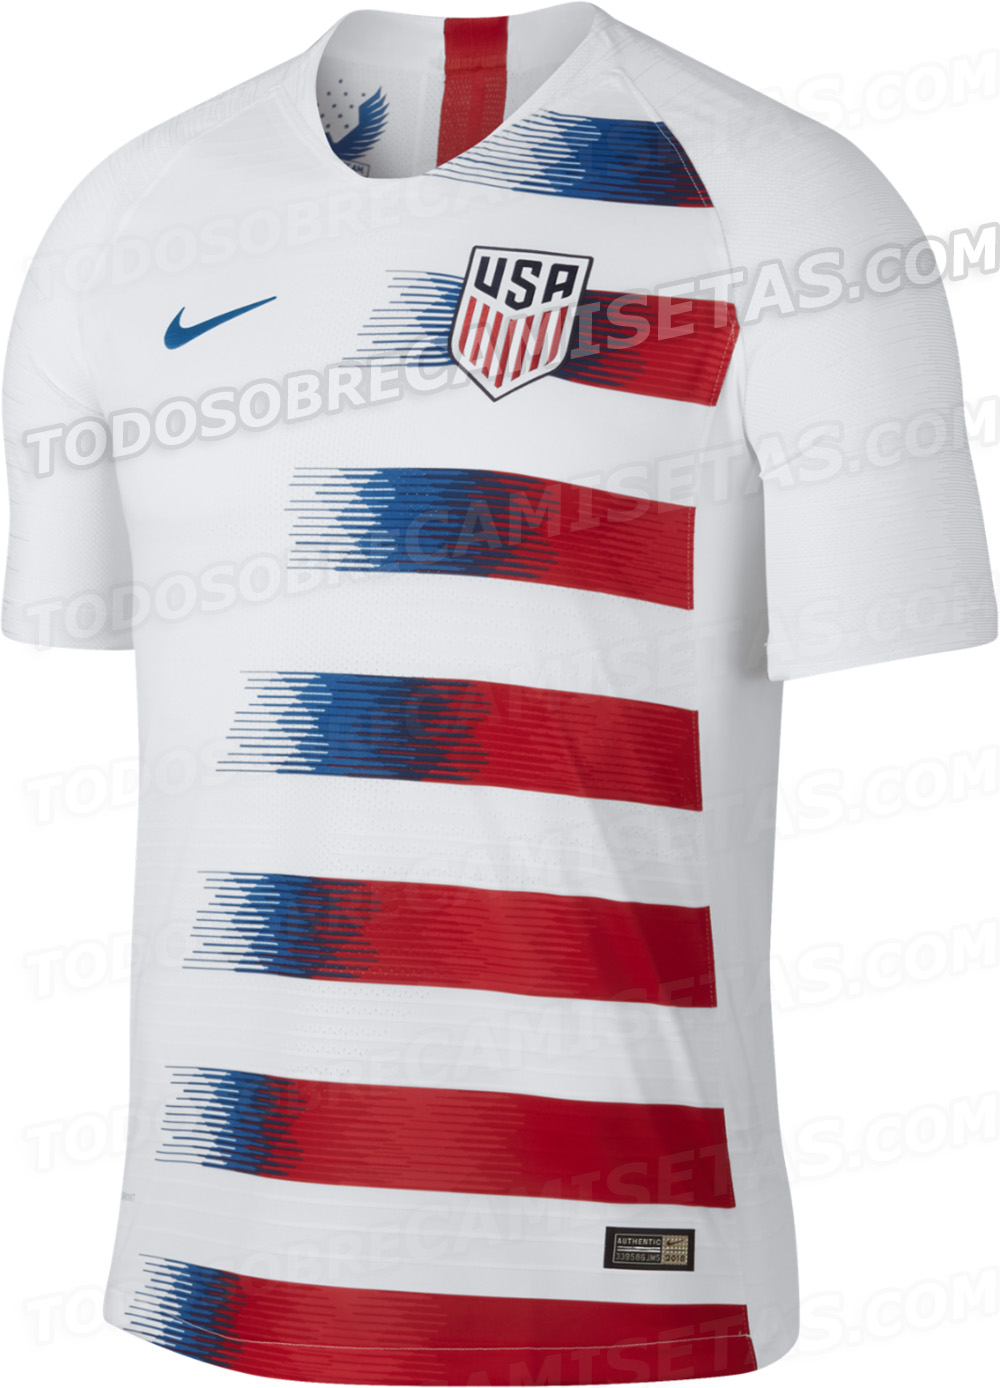 USA 2018 Nike Kits LEAKED